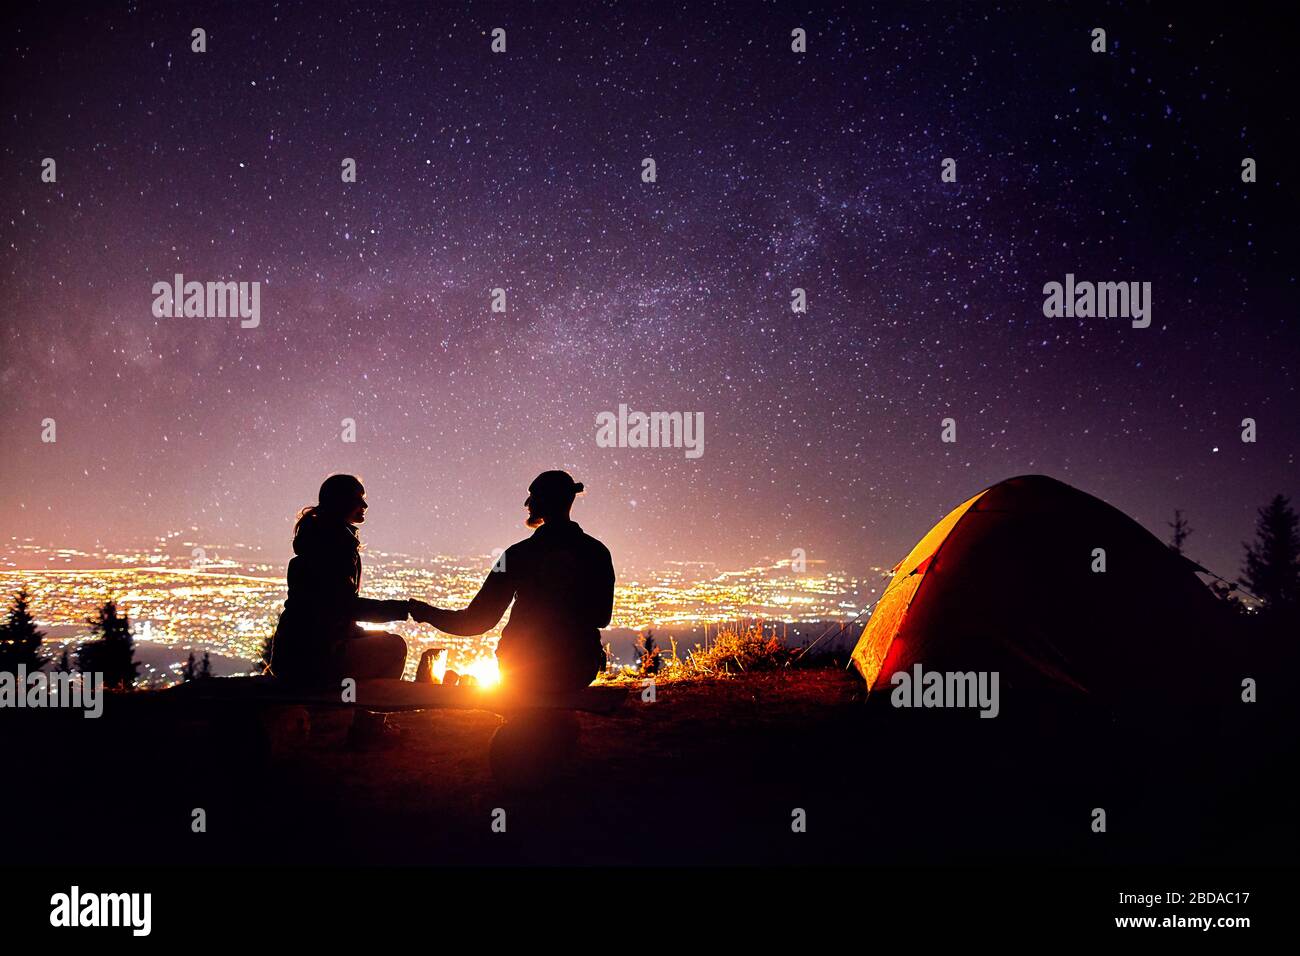 Glückliches Paar in Silhouette in der Nähe von Lagerfeuer und orange Zelt sitzen. Nachthimmel mit milchstrasse Sterne und die Lichter der Stadt im Hintergrund. Stockfoto